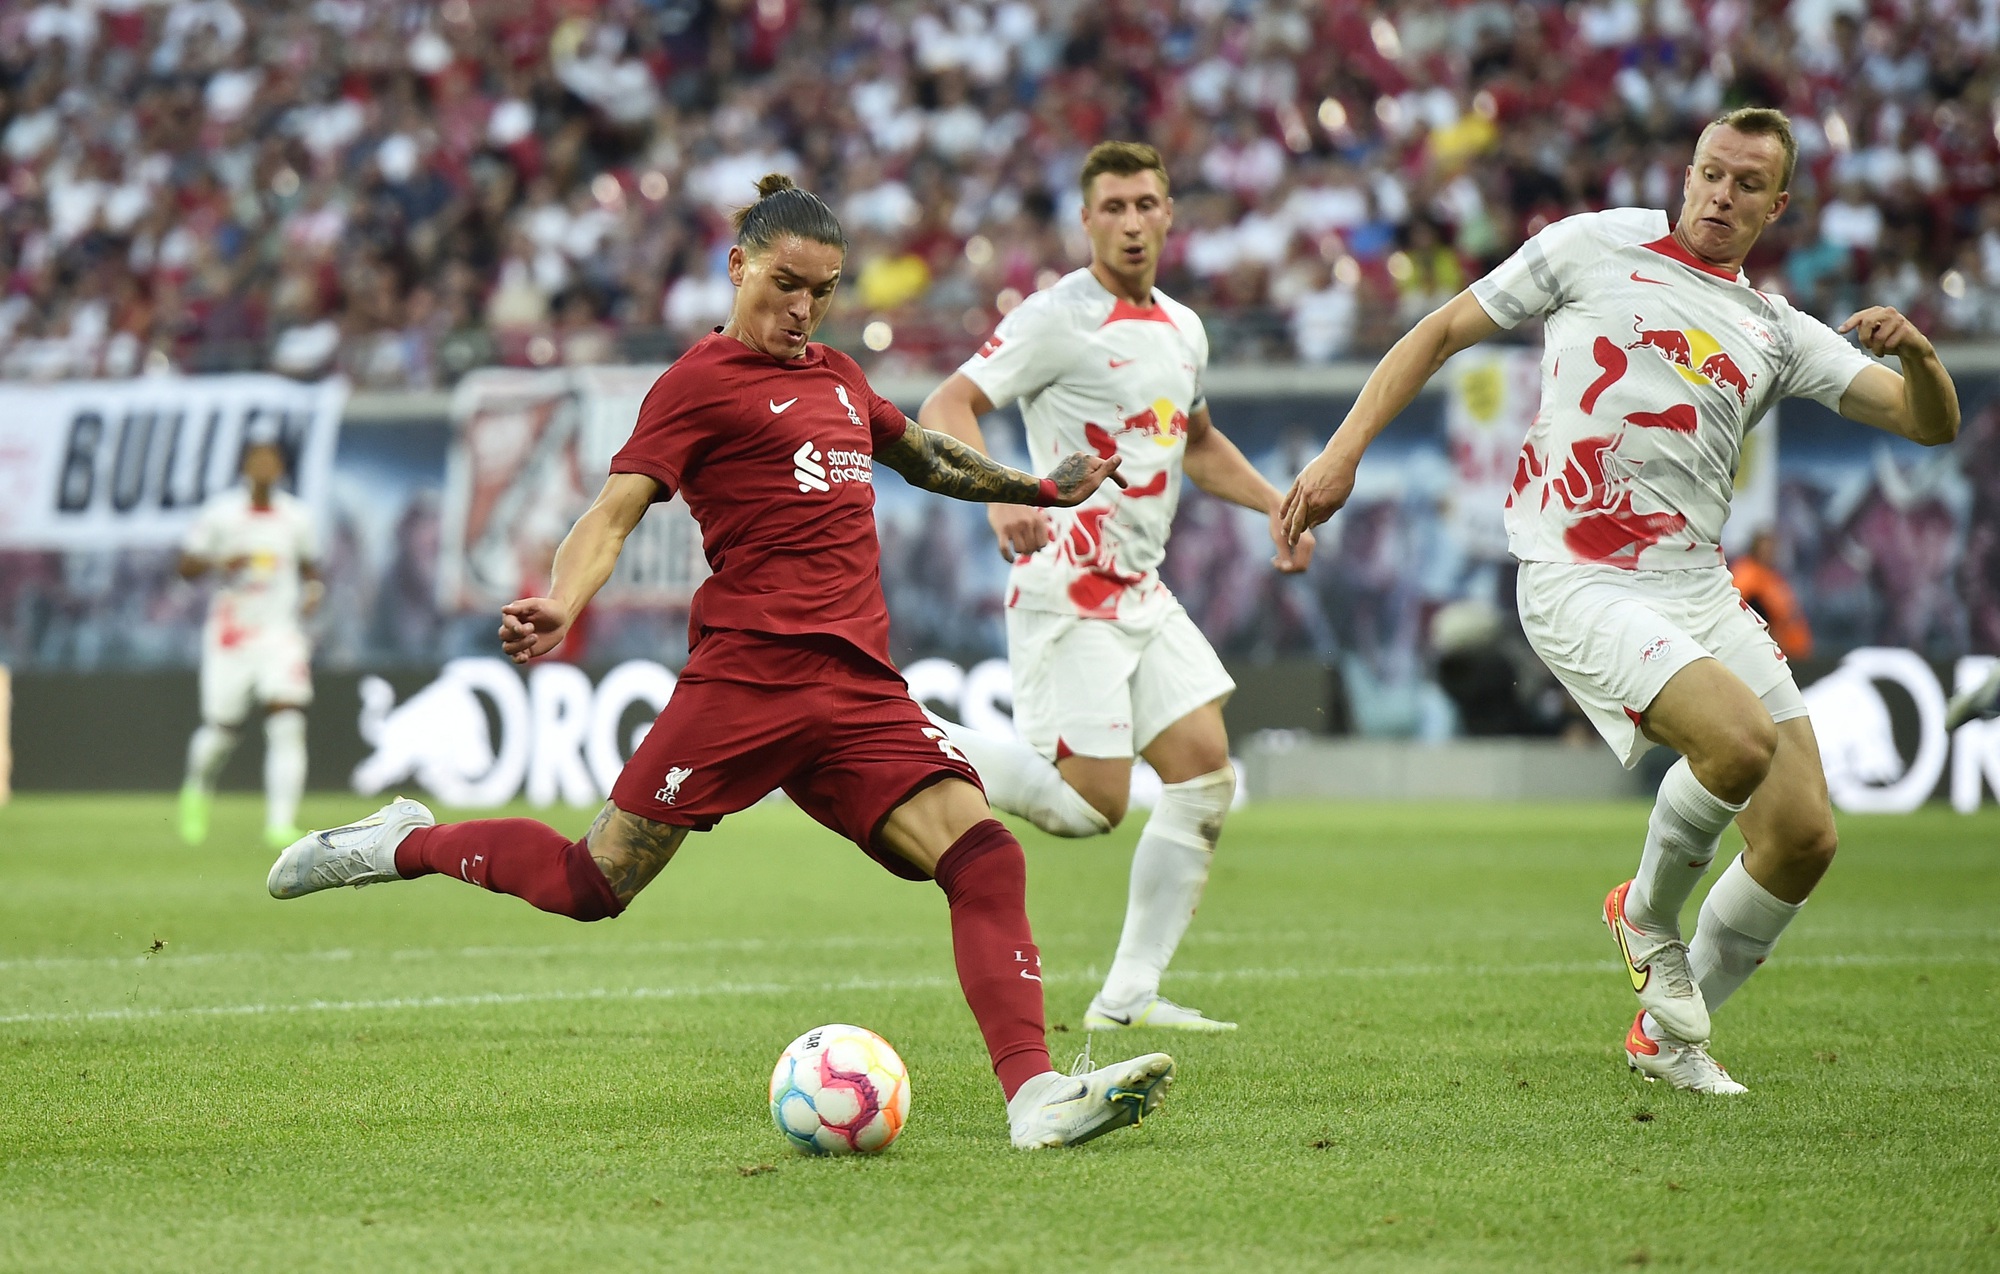 Tân binh Nunez tỏa sáng, Liverpool thắng nhẹ 5 bàn bò đỏ Leipzig - Ảnh 6.